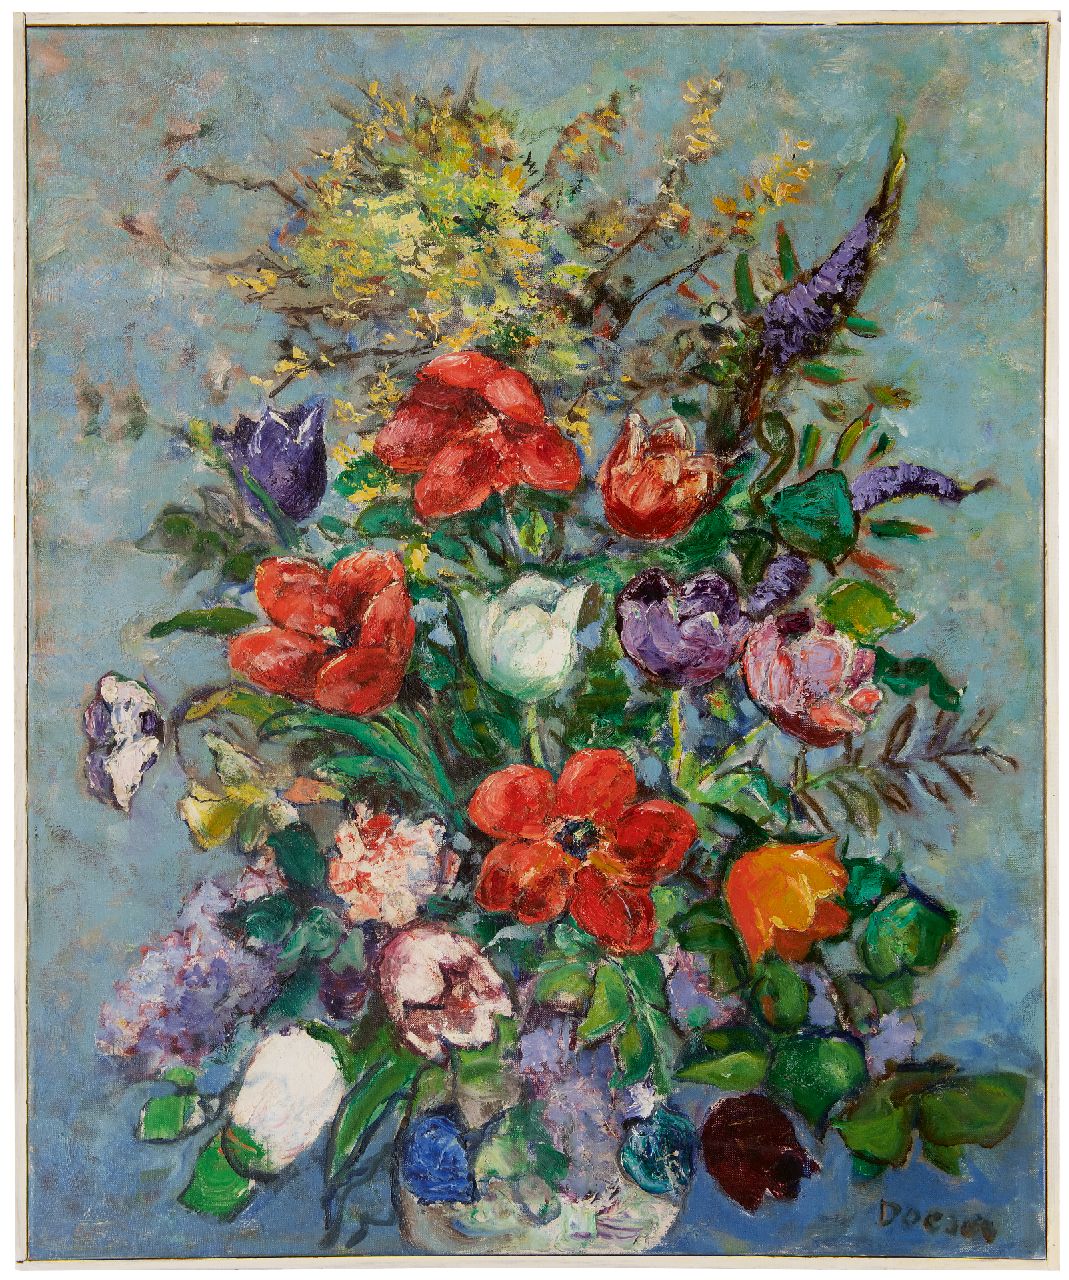 Doeser J.J.  | 'Jacobus' Johannes Doeser | Schilderijen te koop aangeboden | Zomerbloemen, olieverf op doek 94,8 x 78,0 cm, gesigneerd rechtsonder